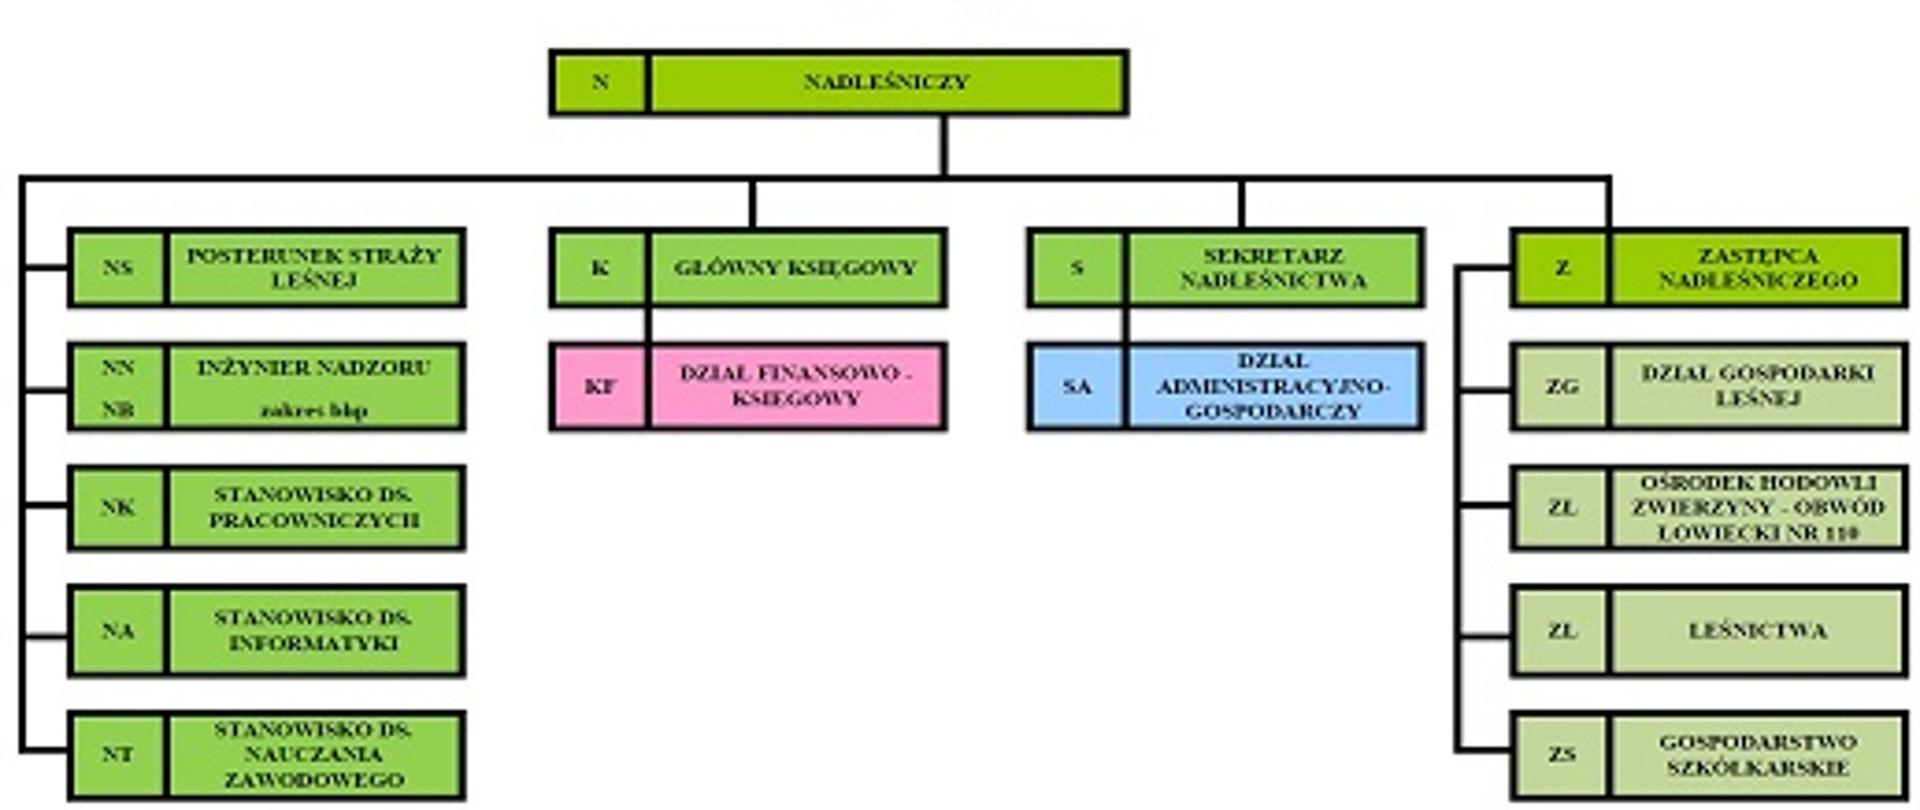 Schemat struktury organizacyjnej Nadleśnictwa Babimost